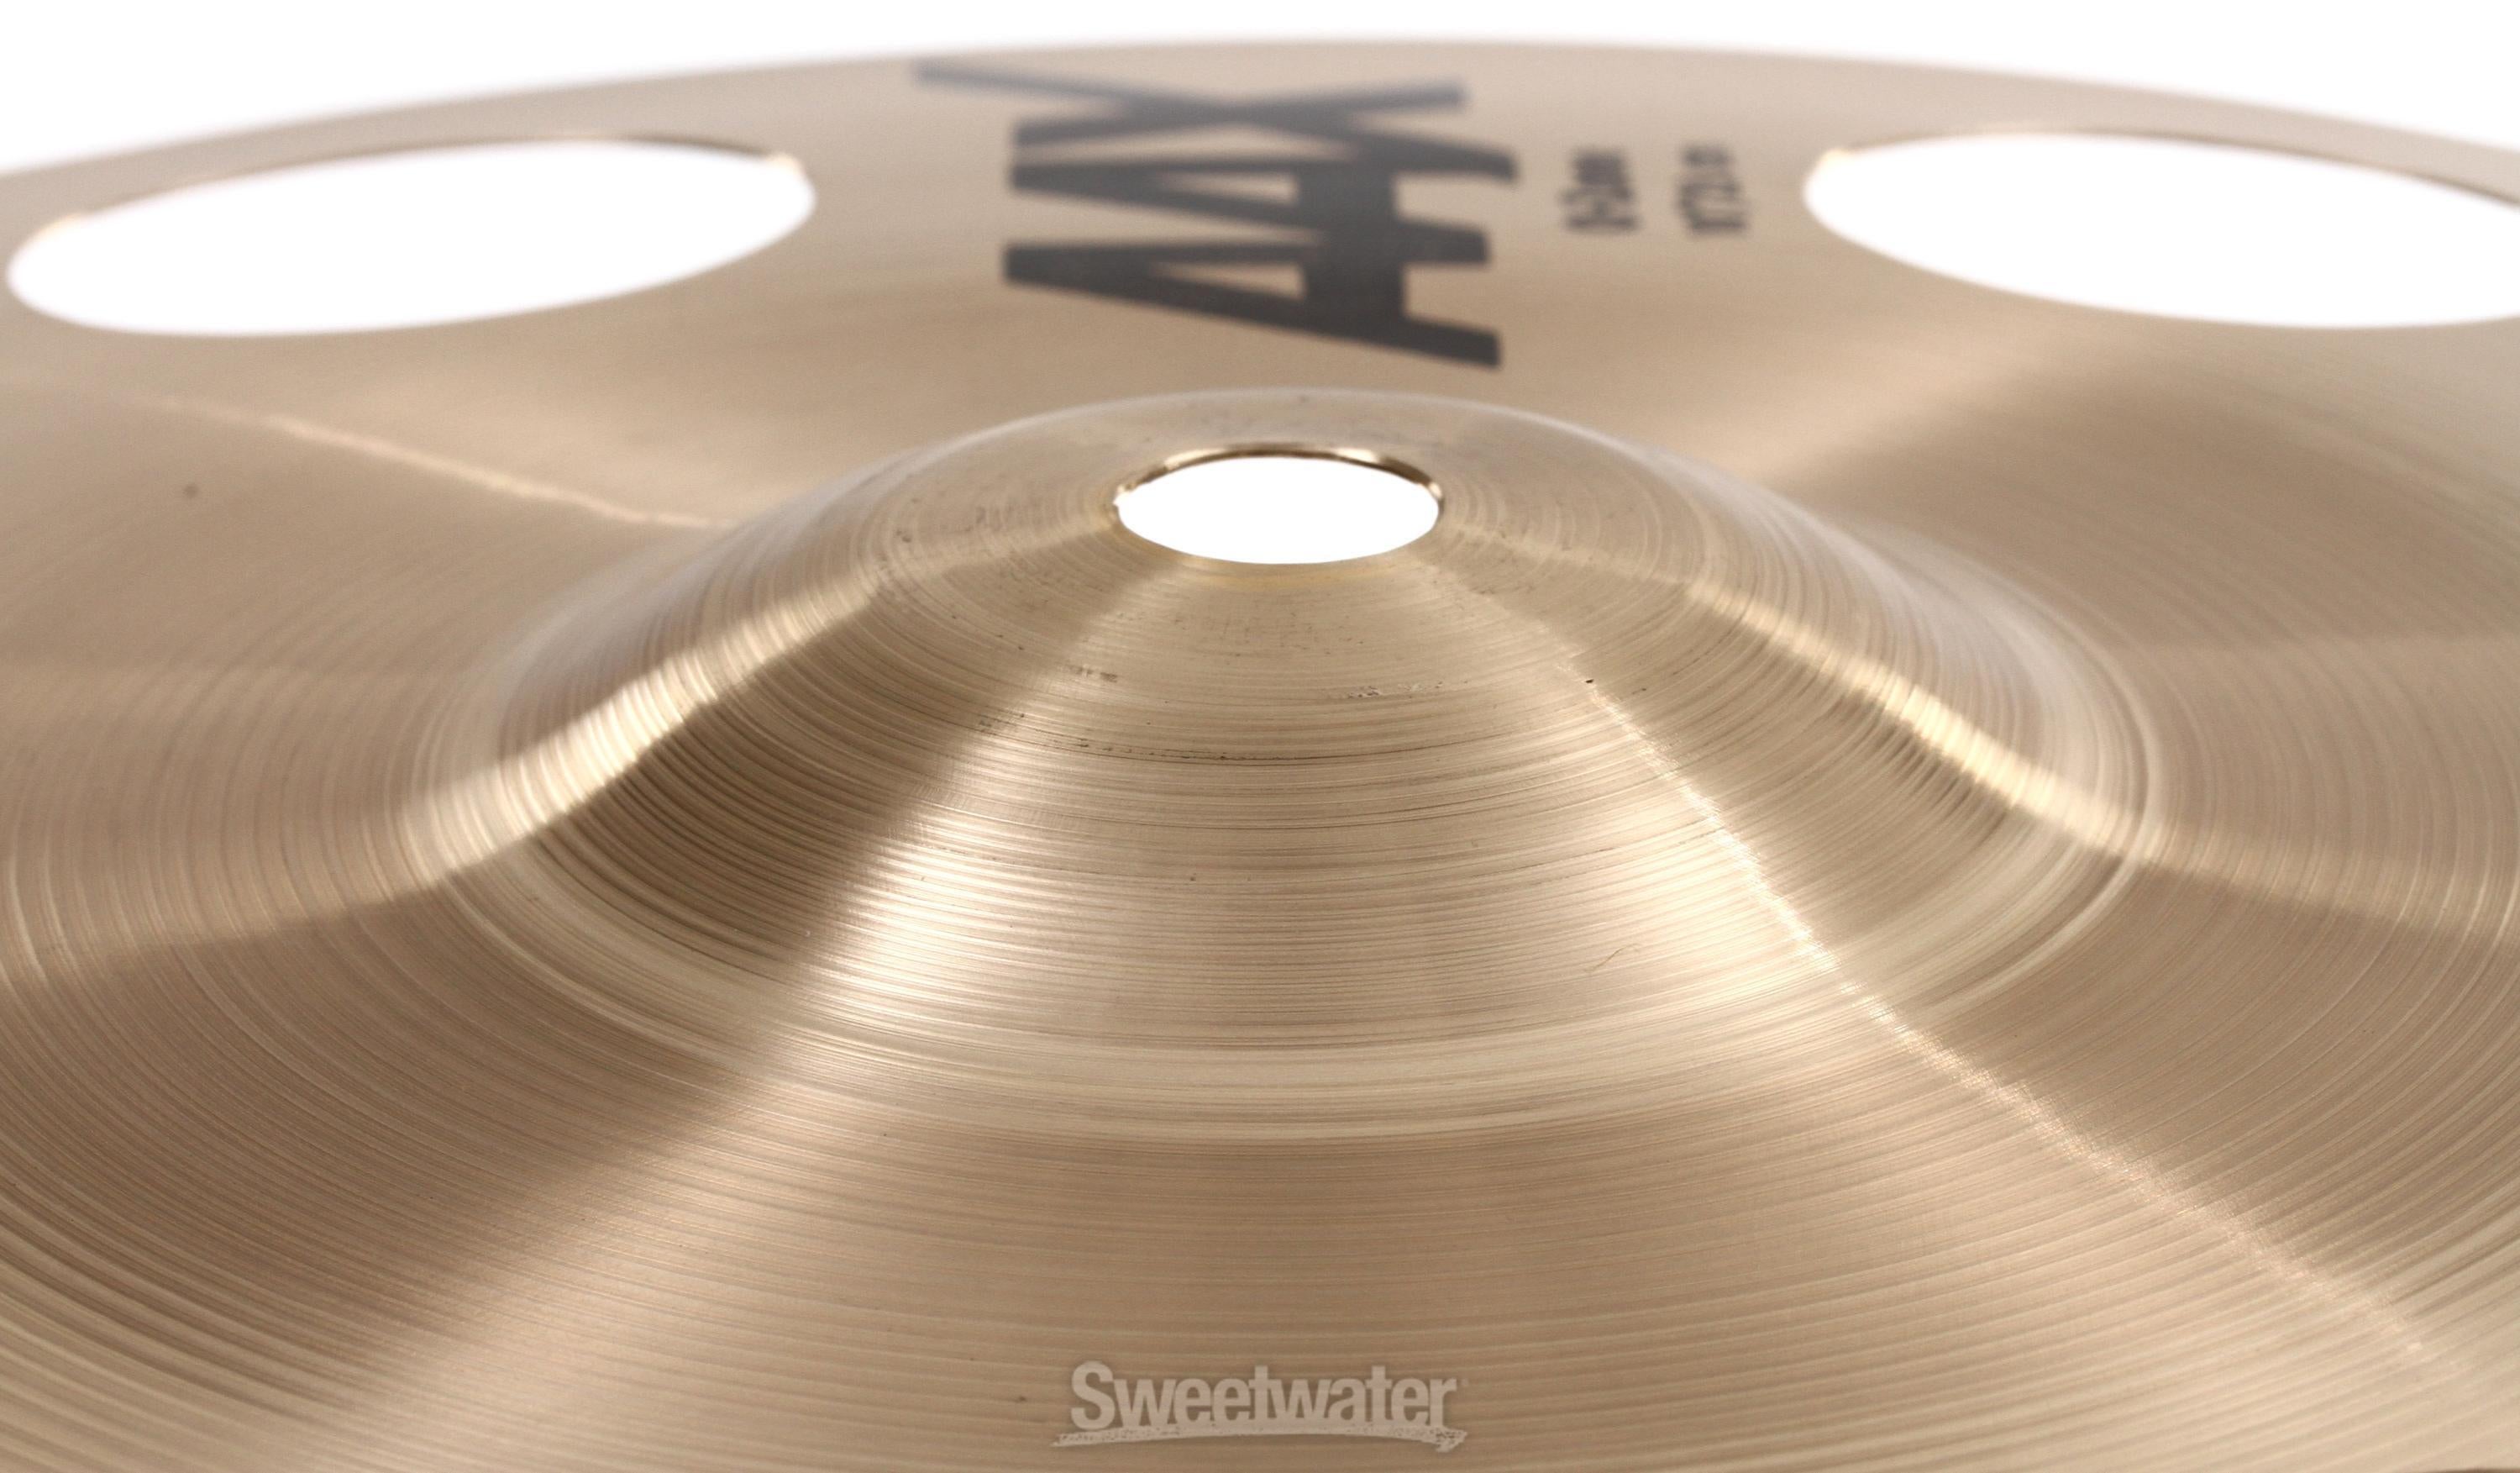 Sabian 10 inch AAX O-Zone Splash Cymbal | Sweetwater